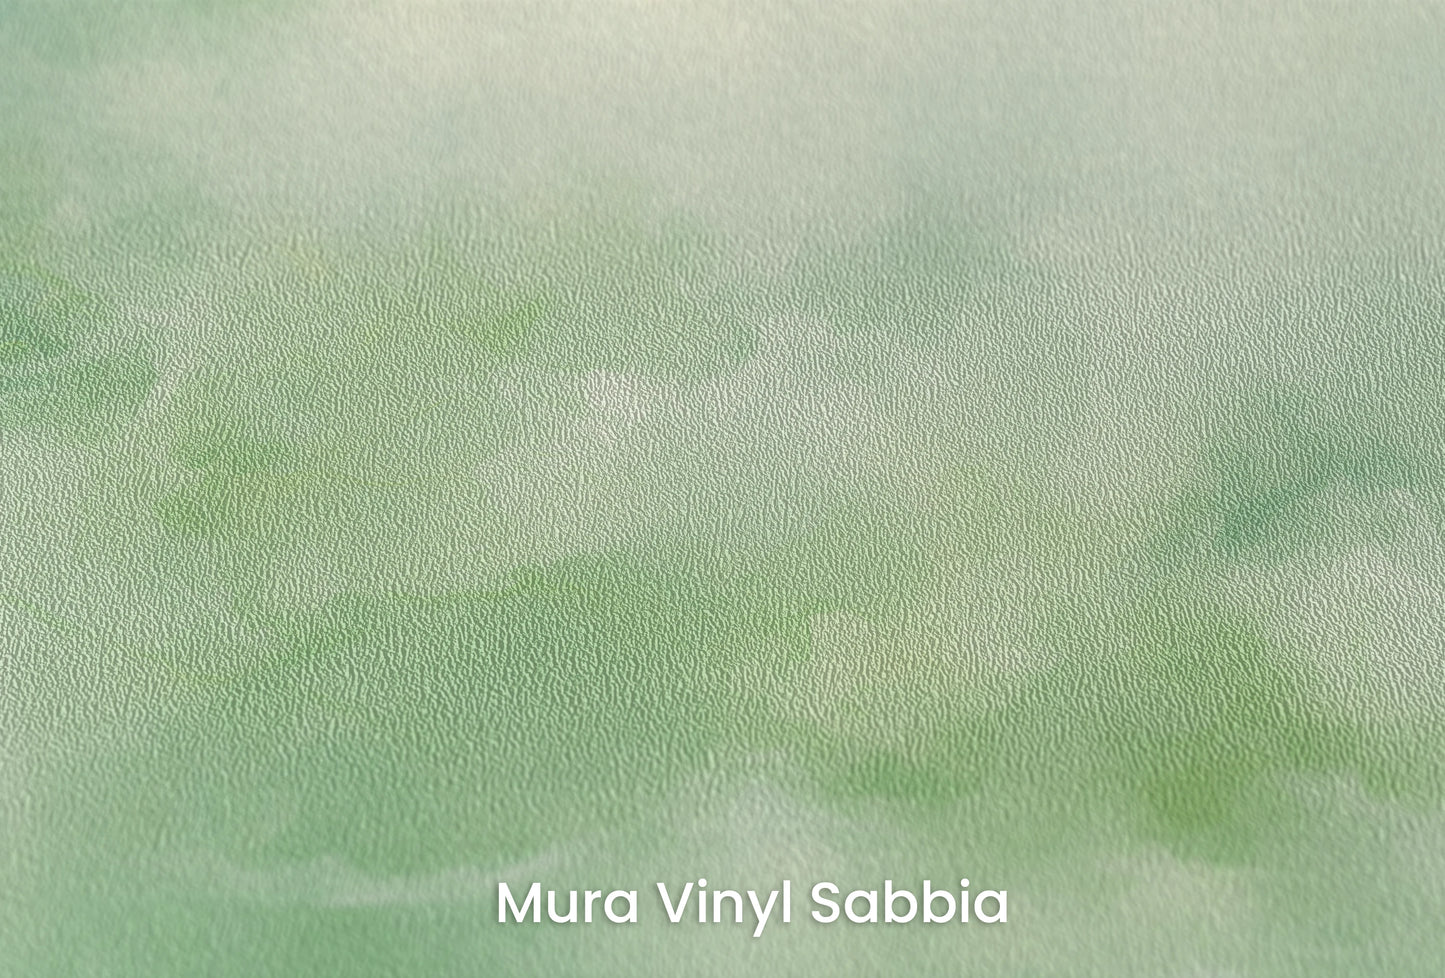 Zbliżenie na artystyczną fototapetę o nazwie Serene Reflection na podłożu Mura Vinyl Sabbia struktura grubego ziarna piasku.